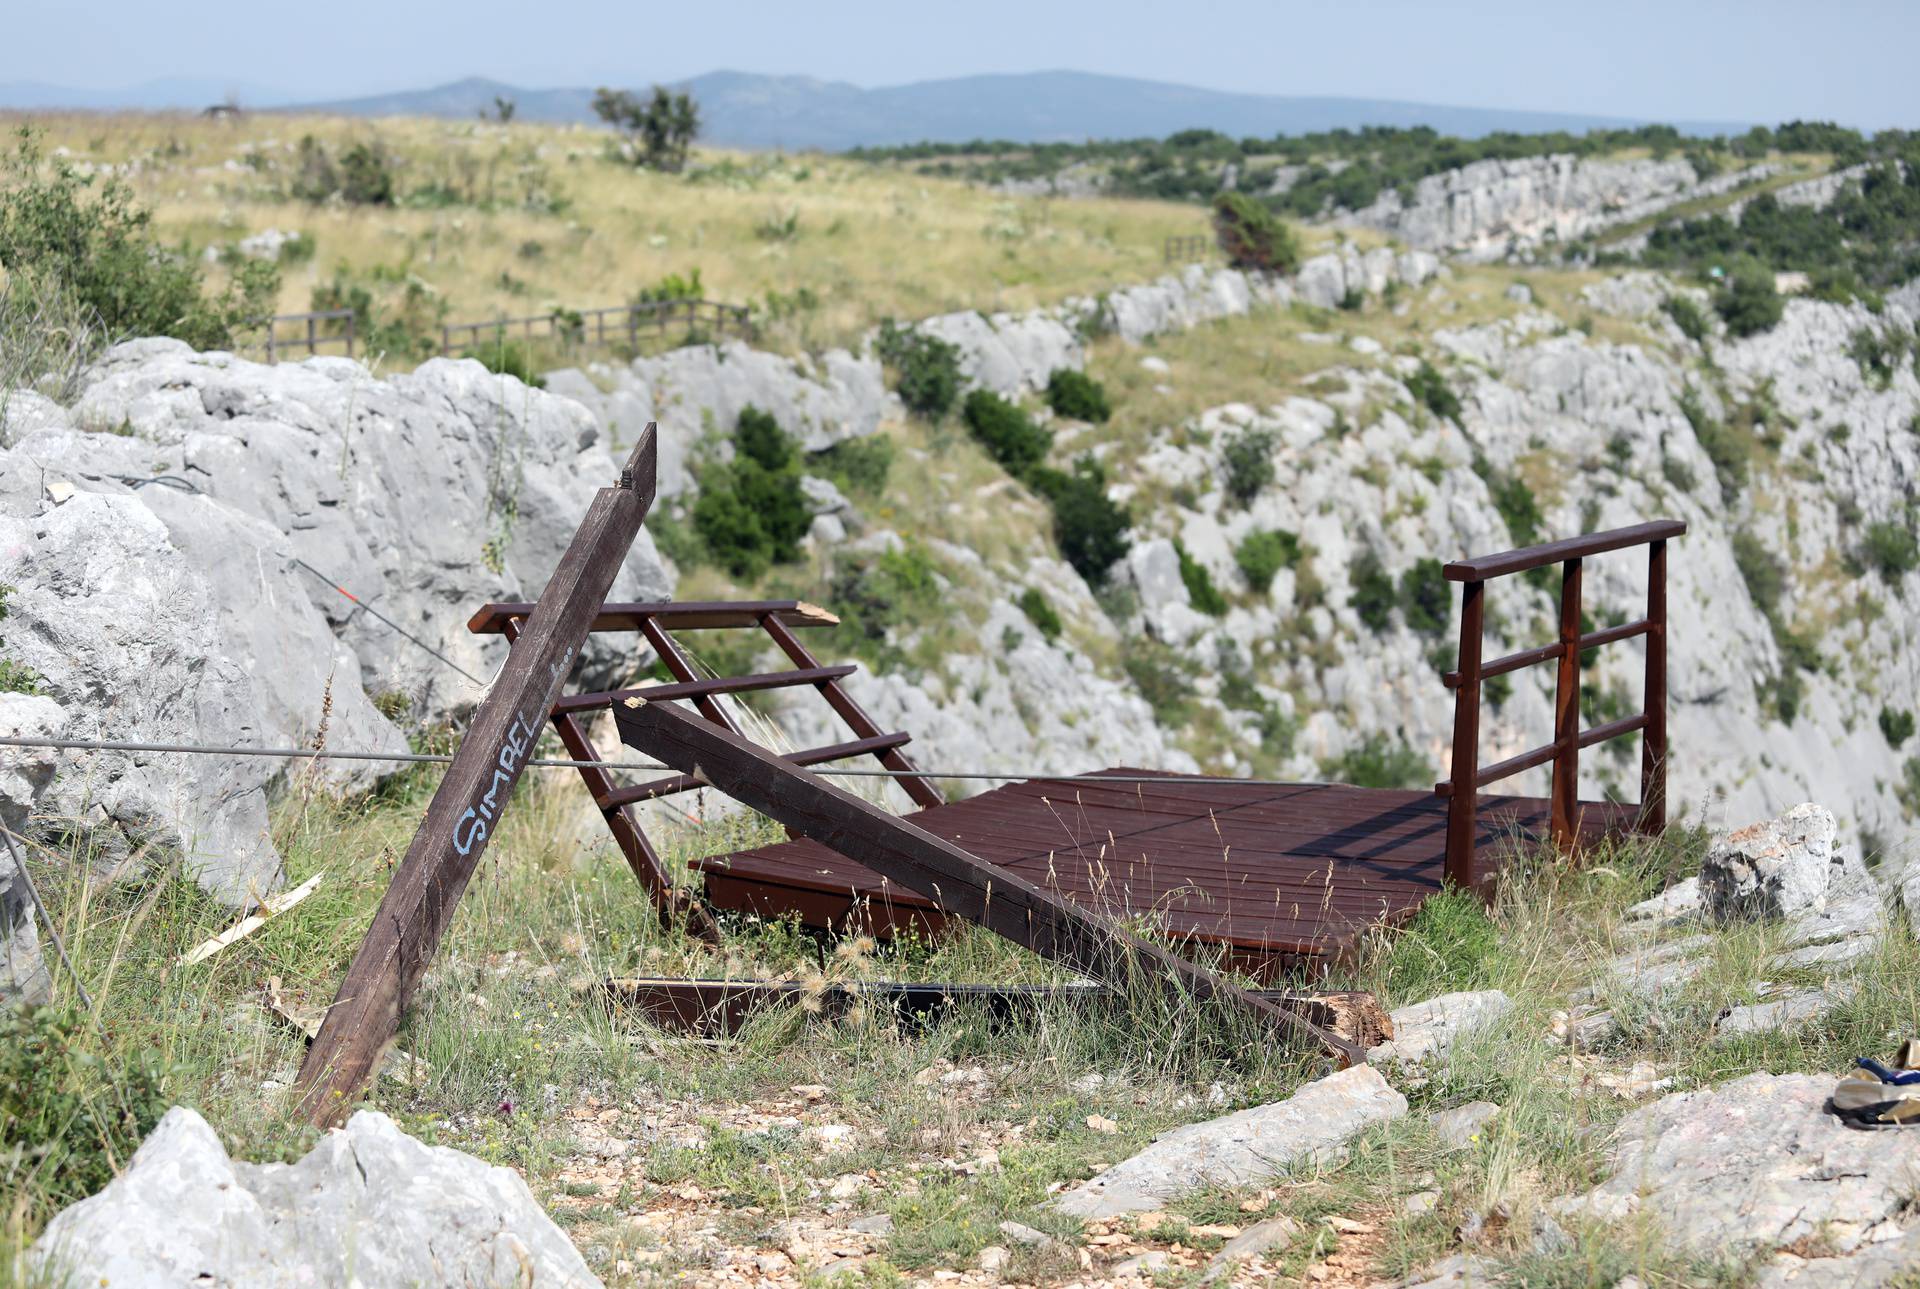 Pronađeni su ostaci mađarskog vojnog helikoptera koji se srušio na području Pakova sela 